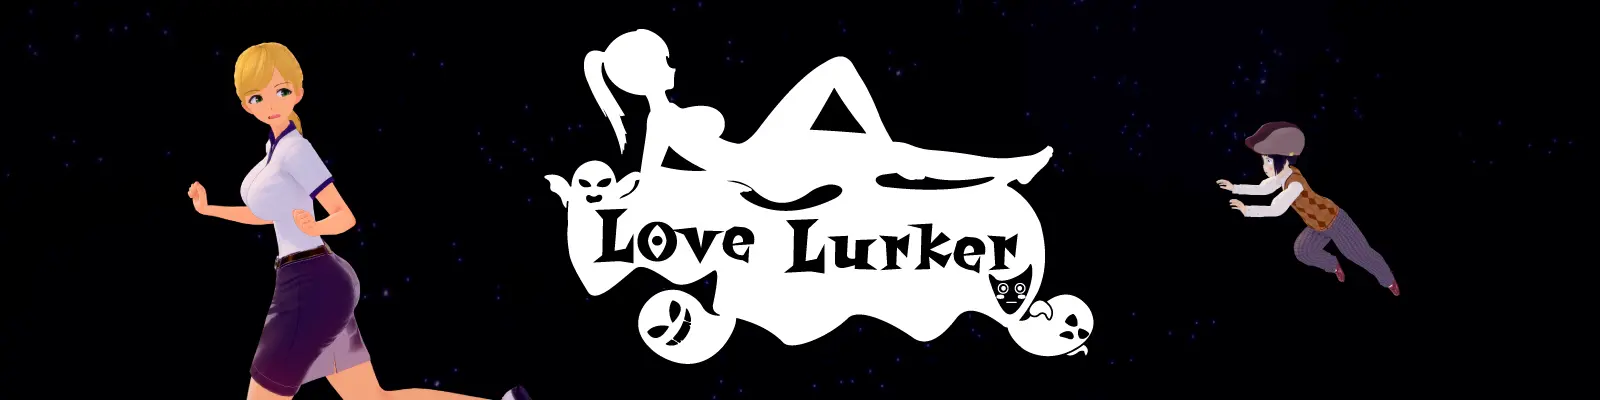 Love Lurker [v0.1] main image